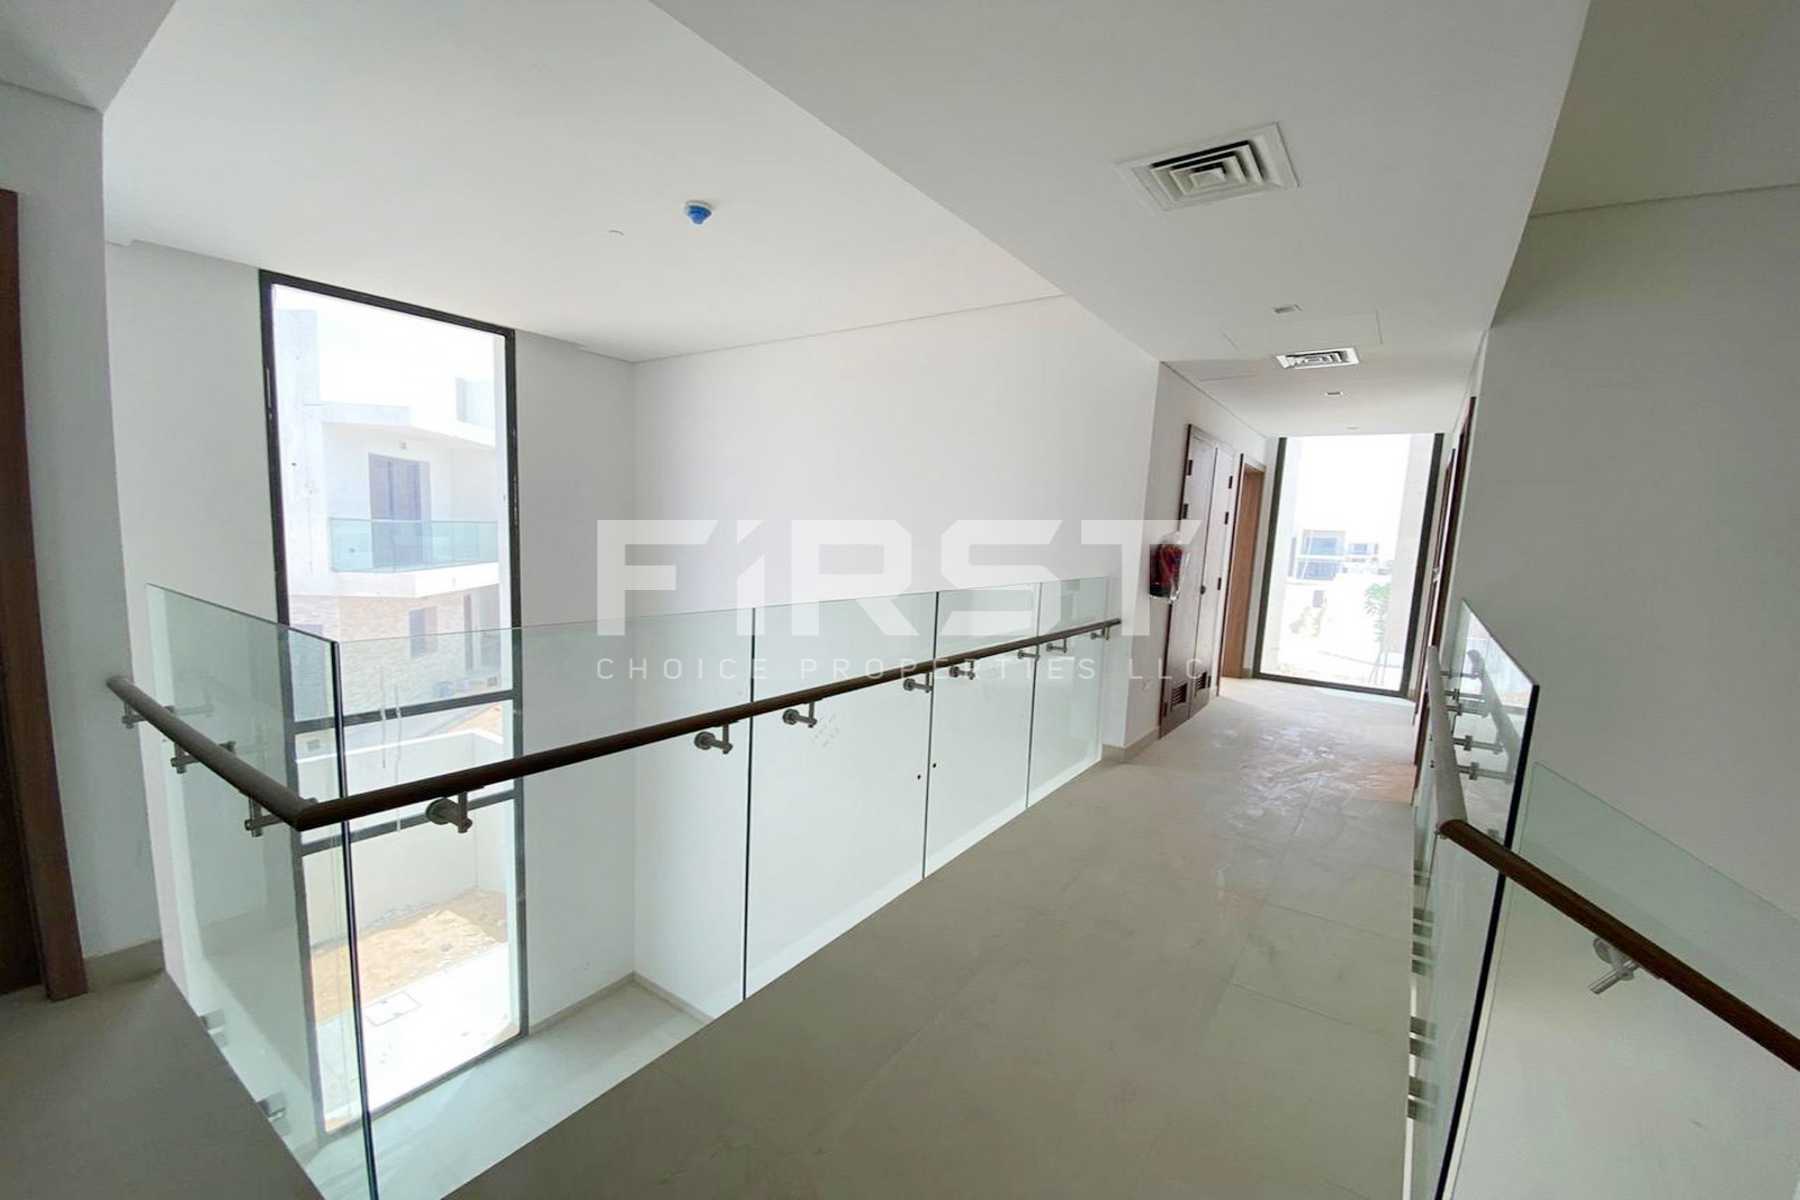 External Photo of 4 Bedroom Duplex Type 4Y in Yas Acres Yas Island Abu Dhabi UAE (7).jpg